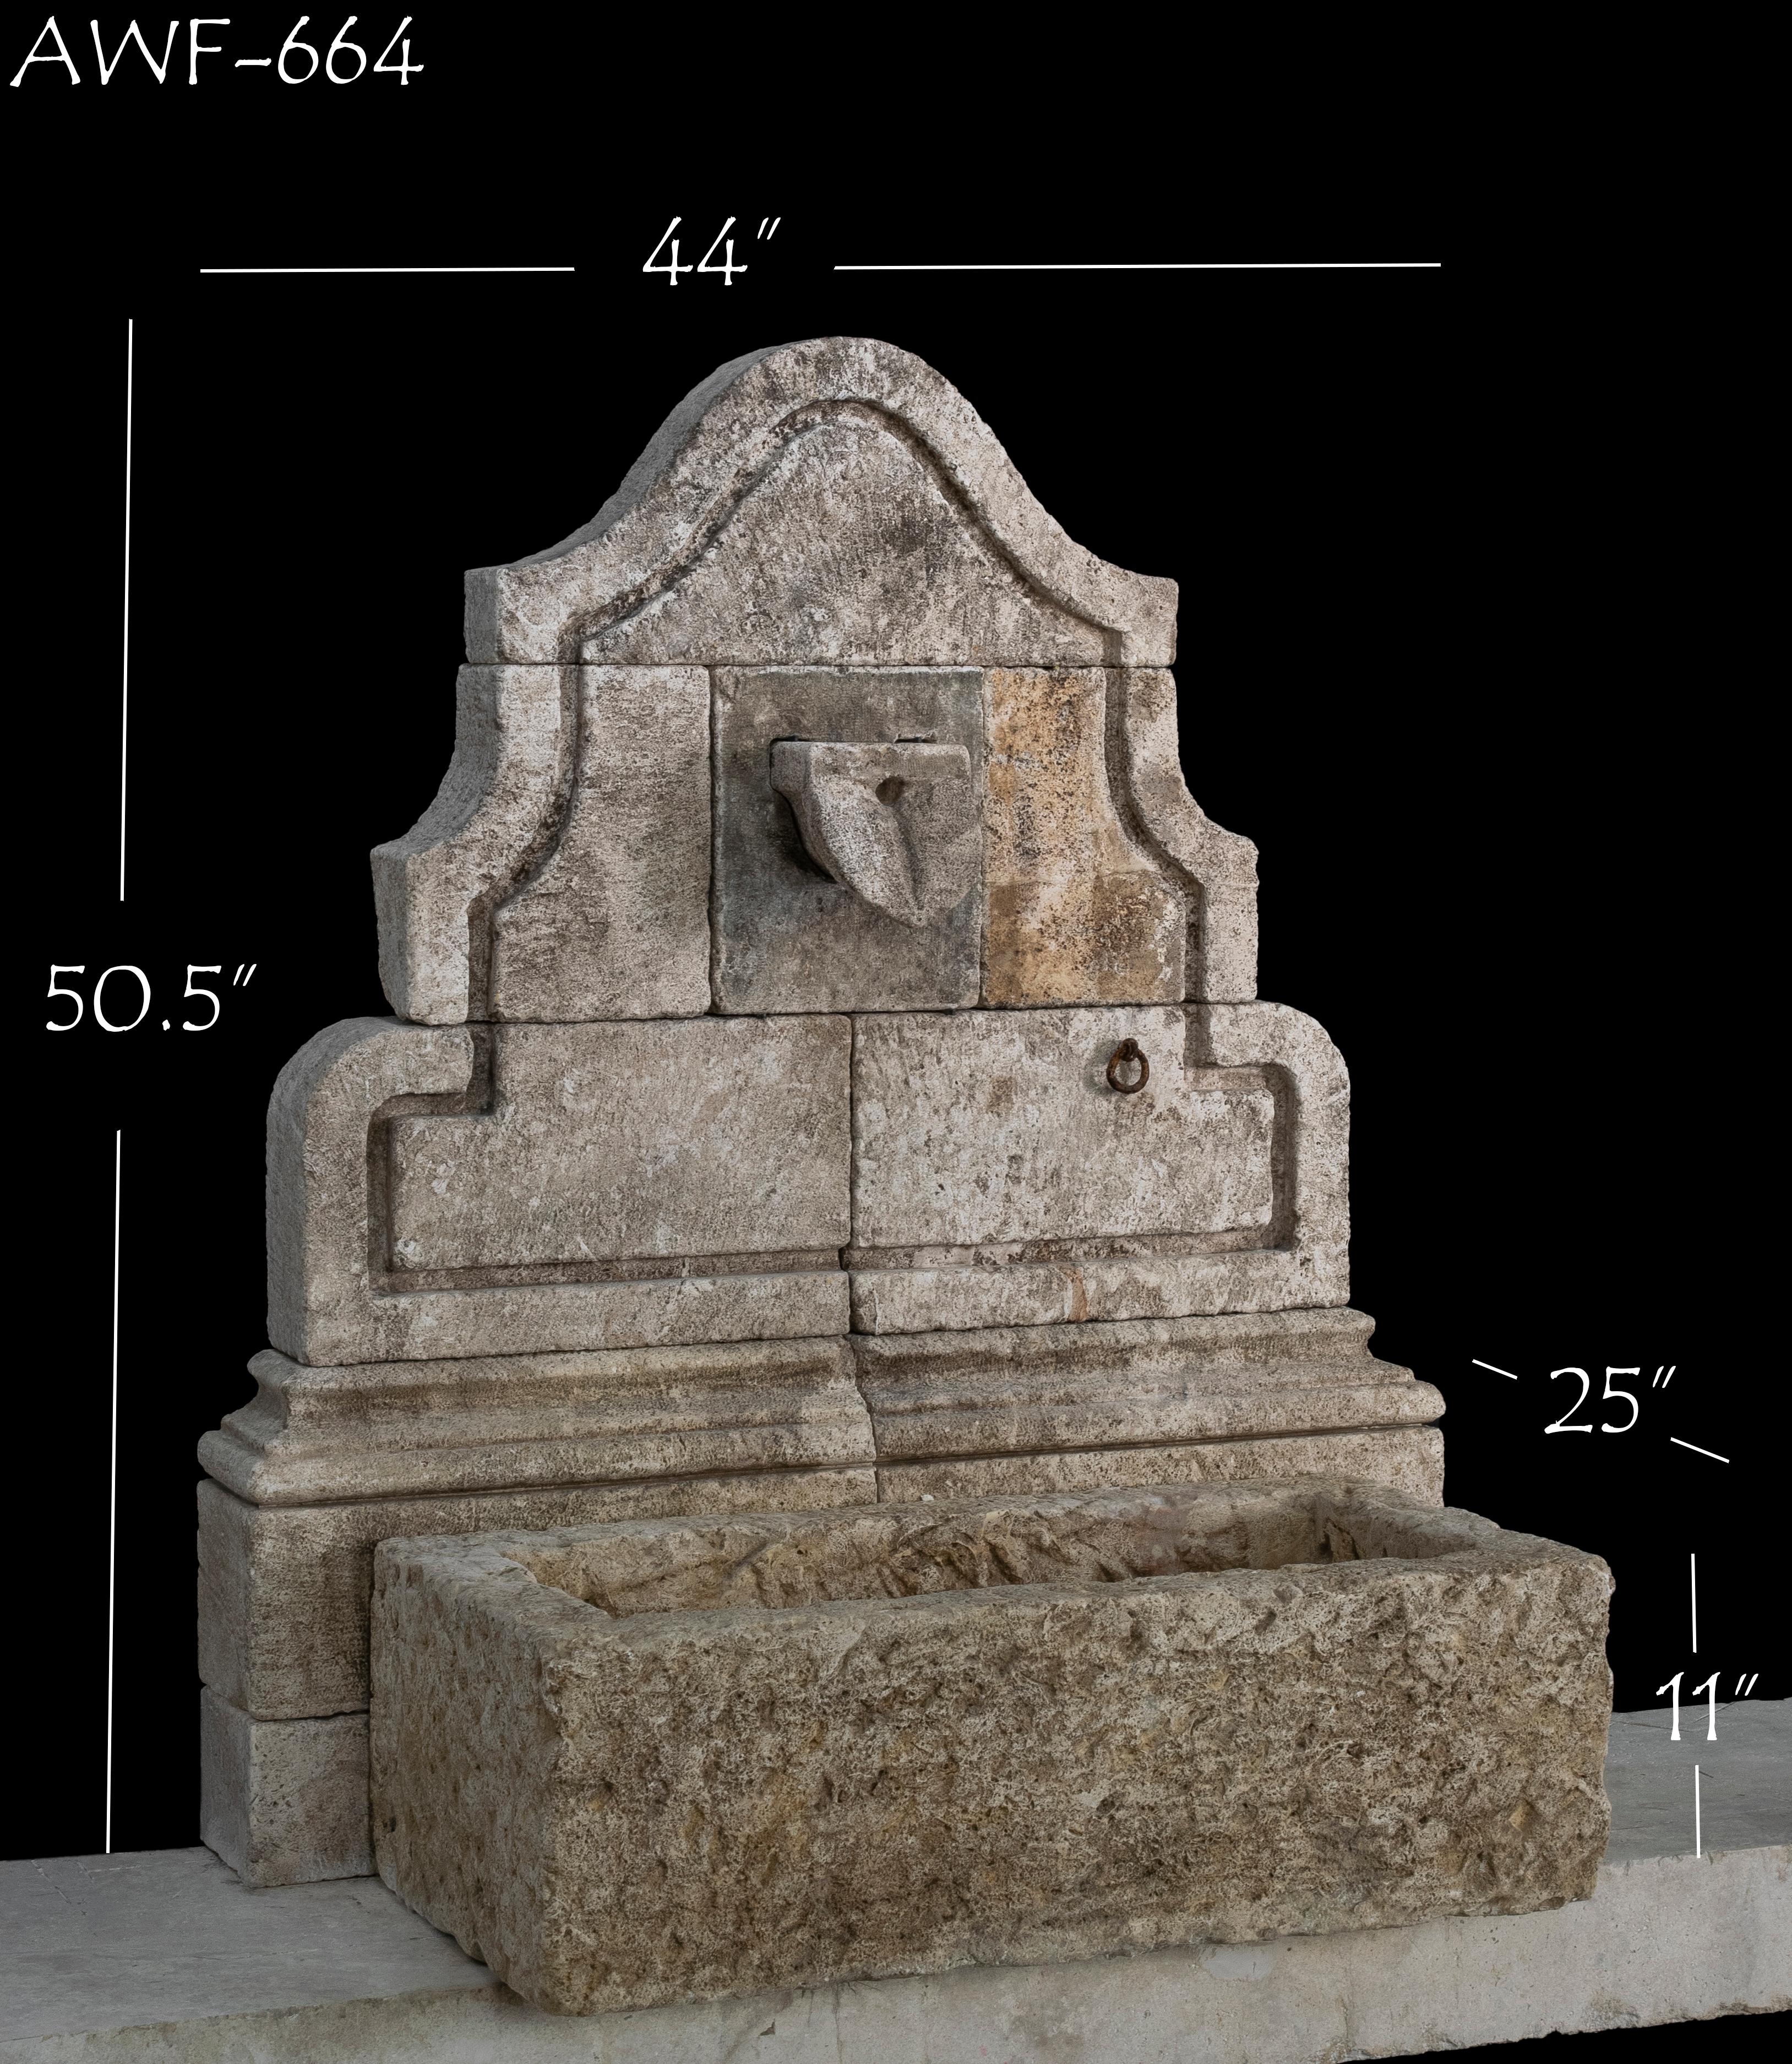 Dieser schöne antike Wandbrunnen aus Kalkstein aus dem 19. Jahrhundert ist eine großartige Ergänzung für jedes Haus im mediterranen, toskanischen, rustikalen oder anderen individuellen Stil. Die natürlich gealterte Farbe und die beschädigte Patina